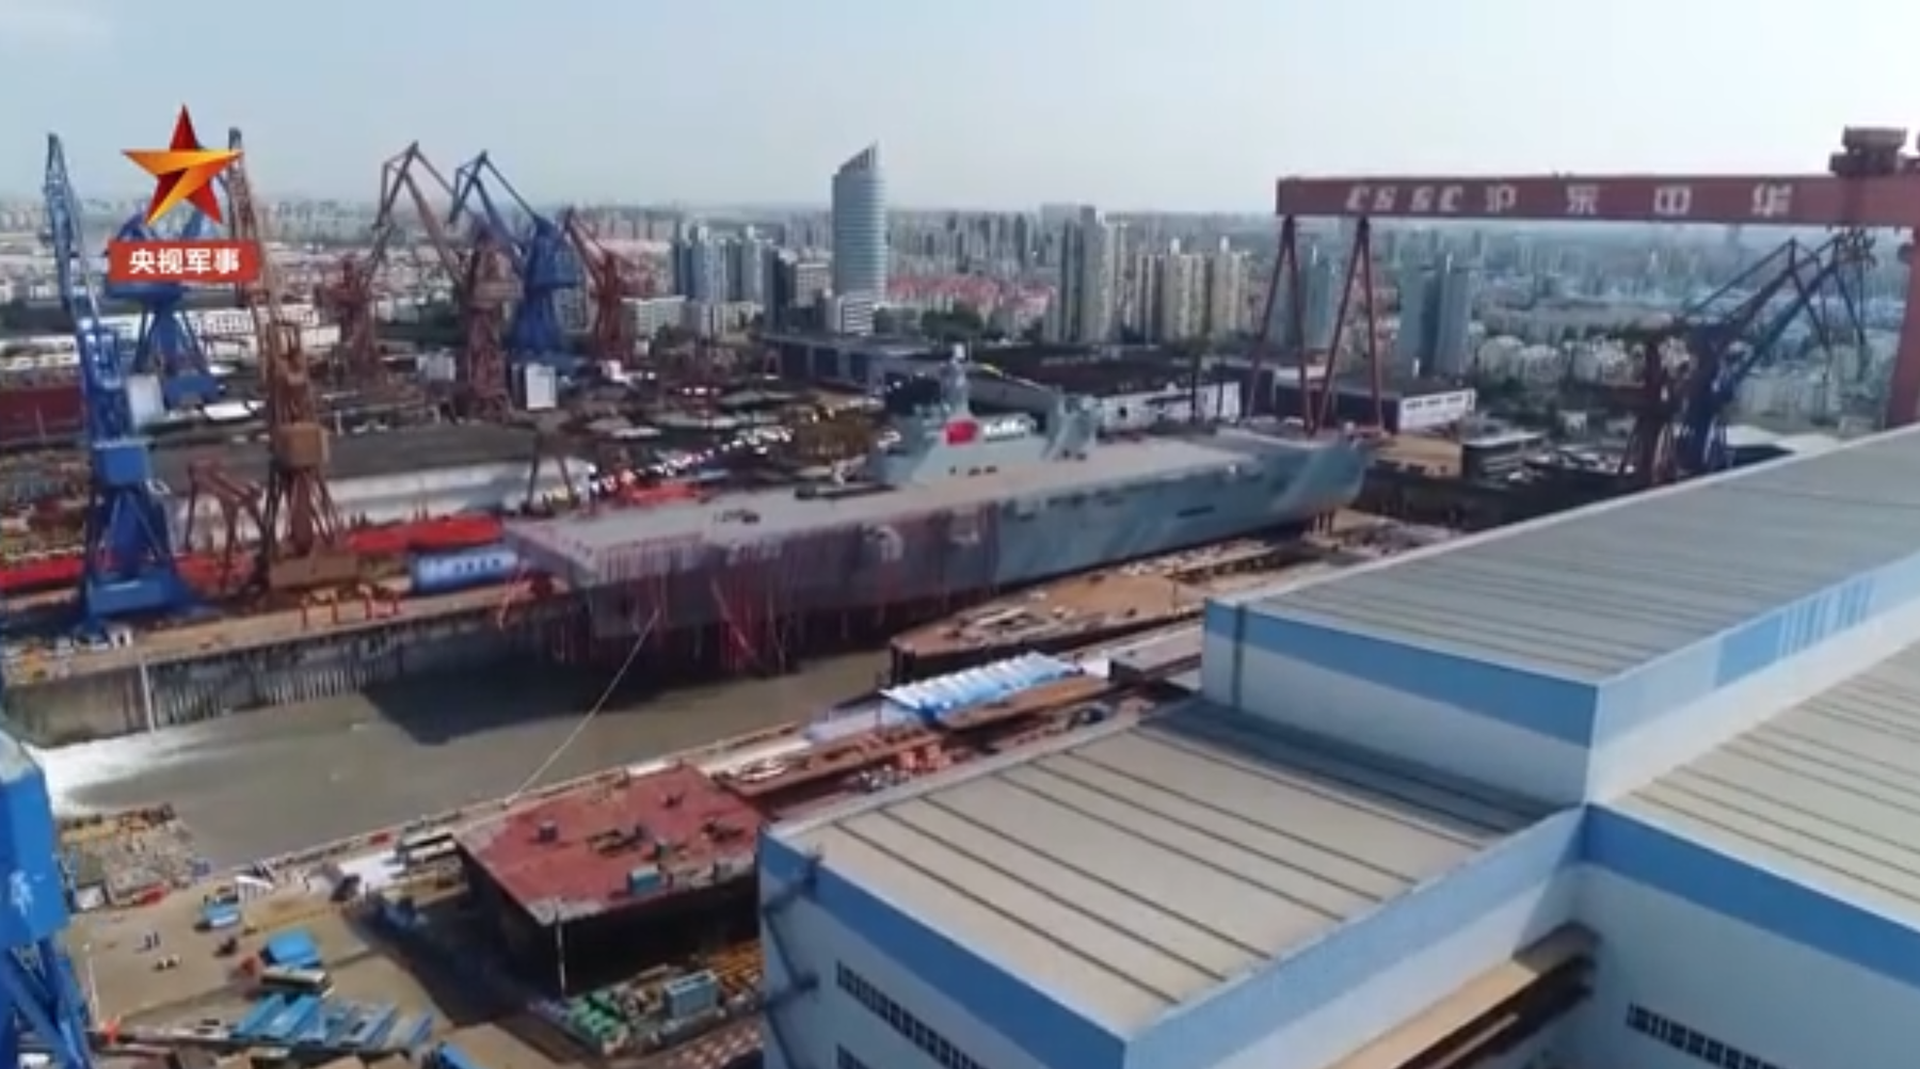 中国央视视频中出现的上海船厂画面。（中国央视军事频道视频截图）